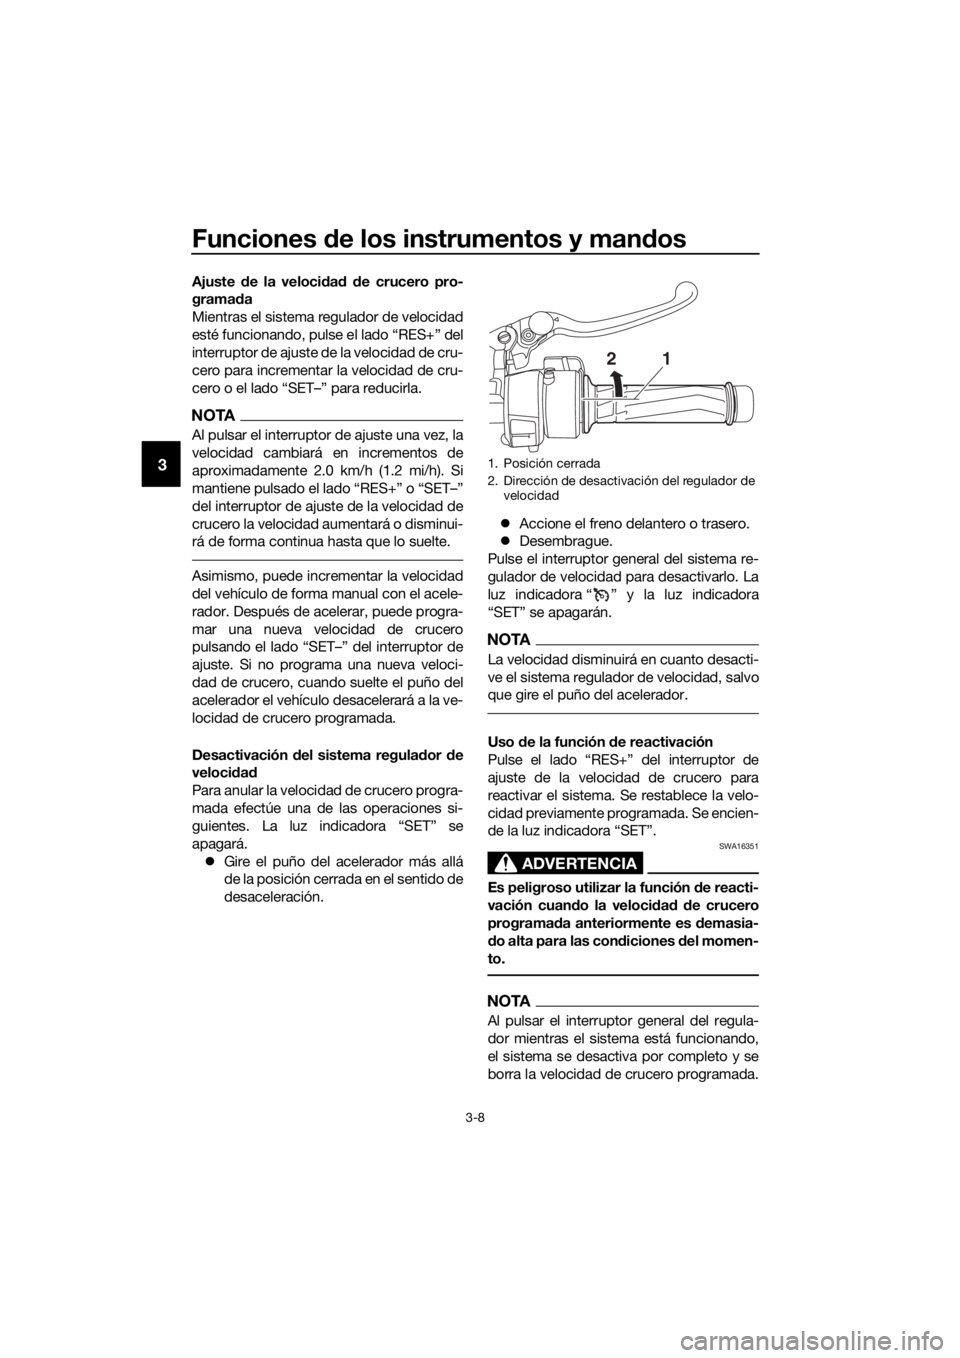 YAMAHA FJR1300AE 2016  Manuale de Empleo (in Spanish) Funciones de los instrumentos y man dos
3-8
3
Ajuste  de la veloci dad  d e crucero pro-
grama da
Mientras el sistema regulador de velocidad
esté funcionando, pulse el lado “RES+” del
interruptor